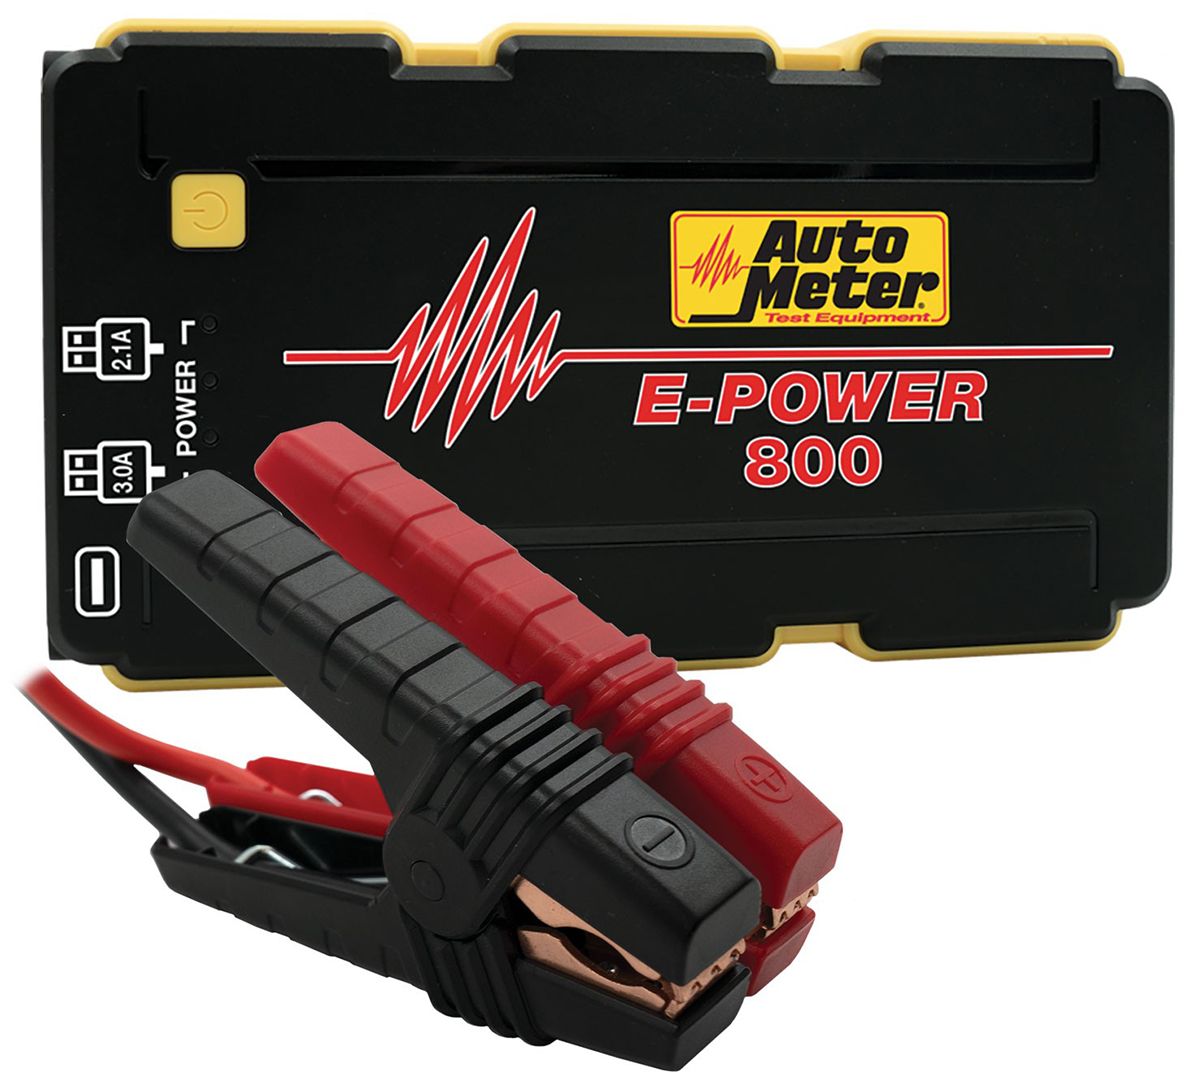 AUEP-800 - E-POWER 800 JUMP STARTER